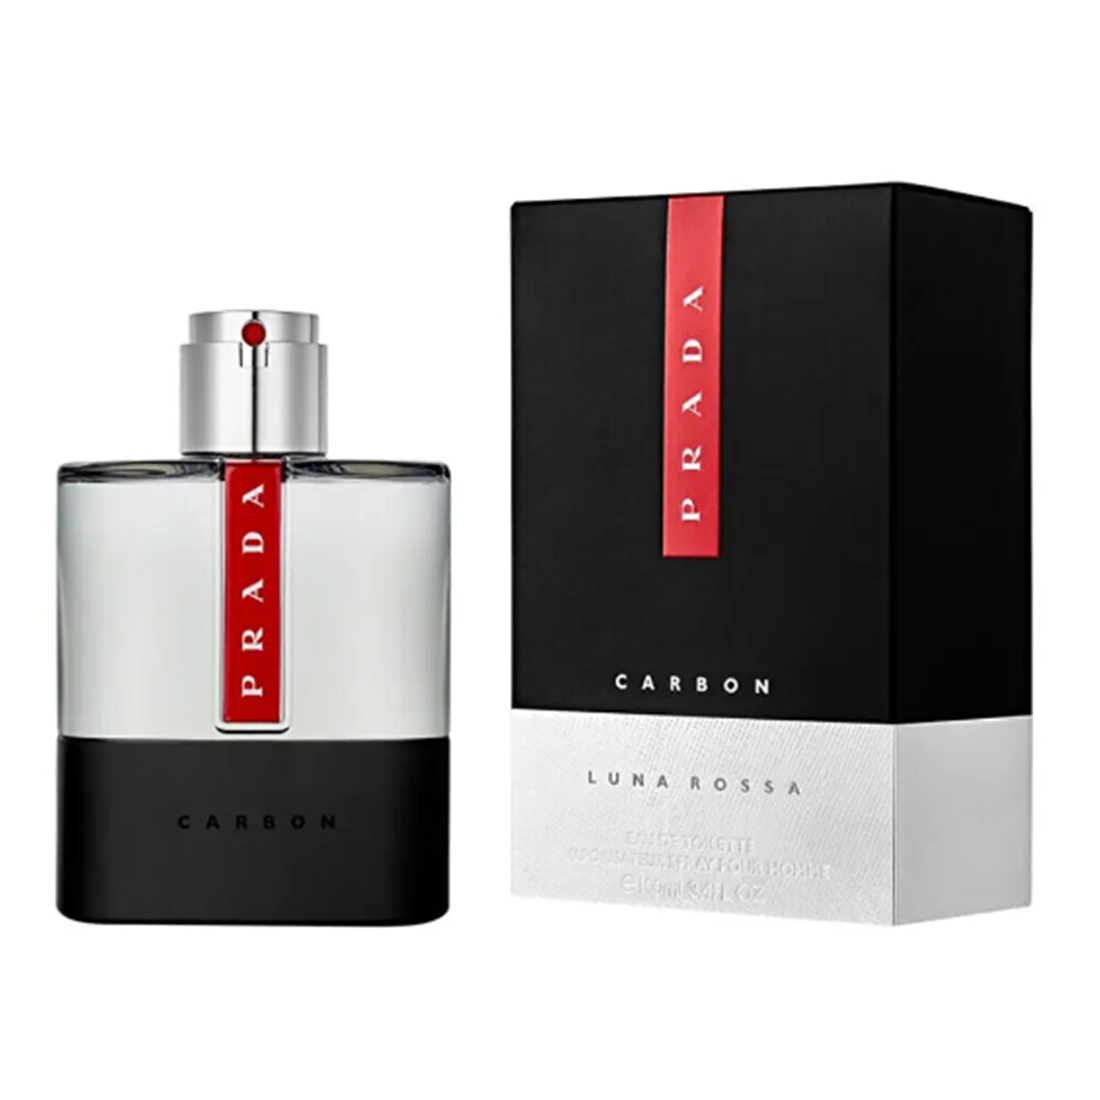 Luna Rossa Carbon EDT 100 ml Parfum barbatesc